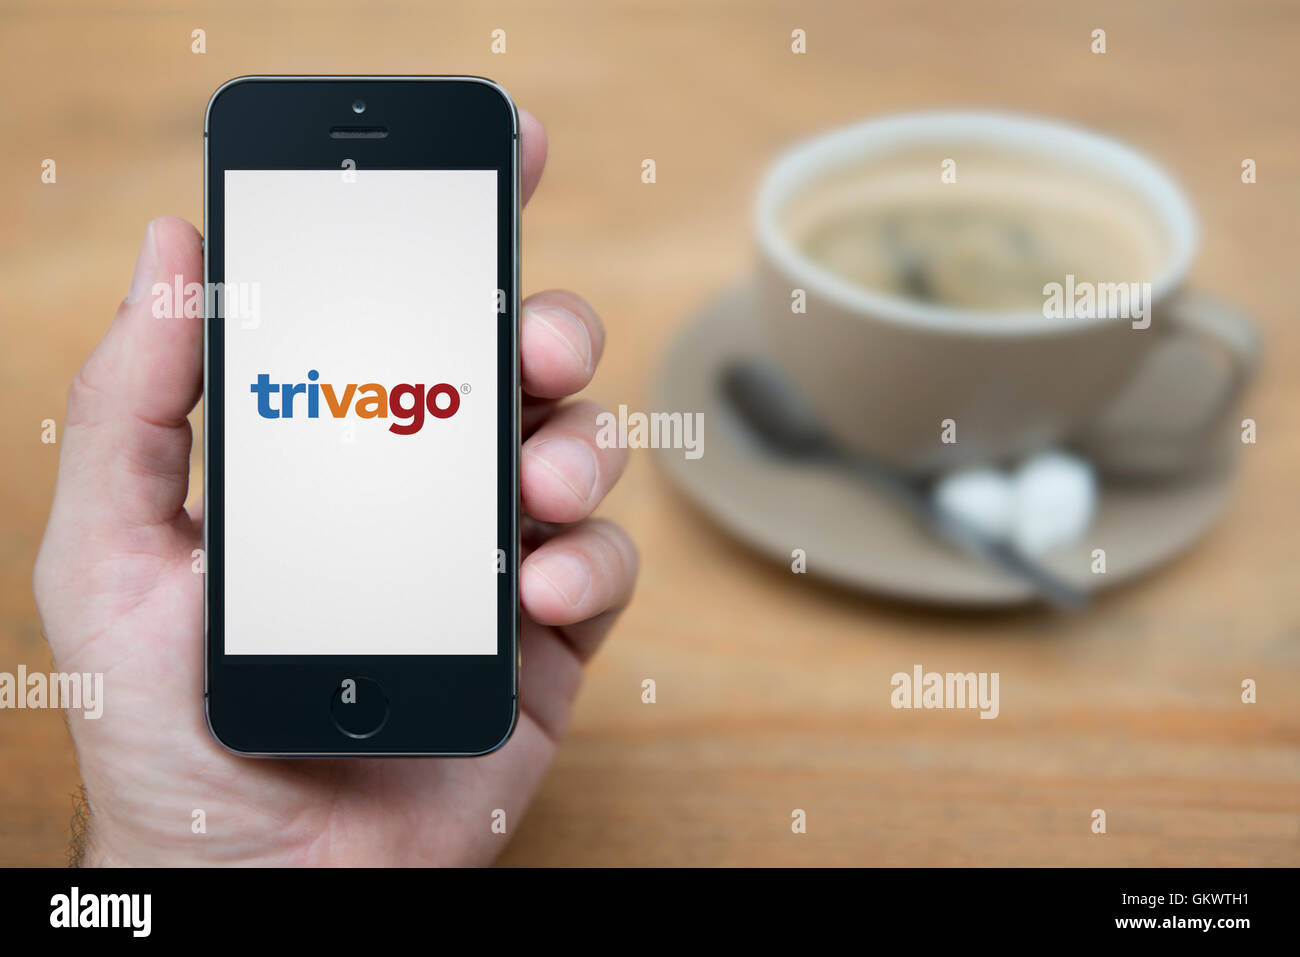 Un homme se penche sur son iPhone qui affiche le logo Tripadvisor, tandis que sam avec une tasse de café (usage éditorial uniquement). Banque D'Images